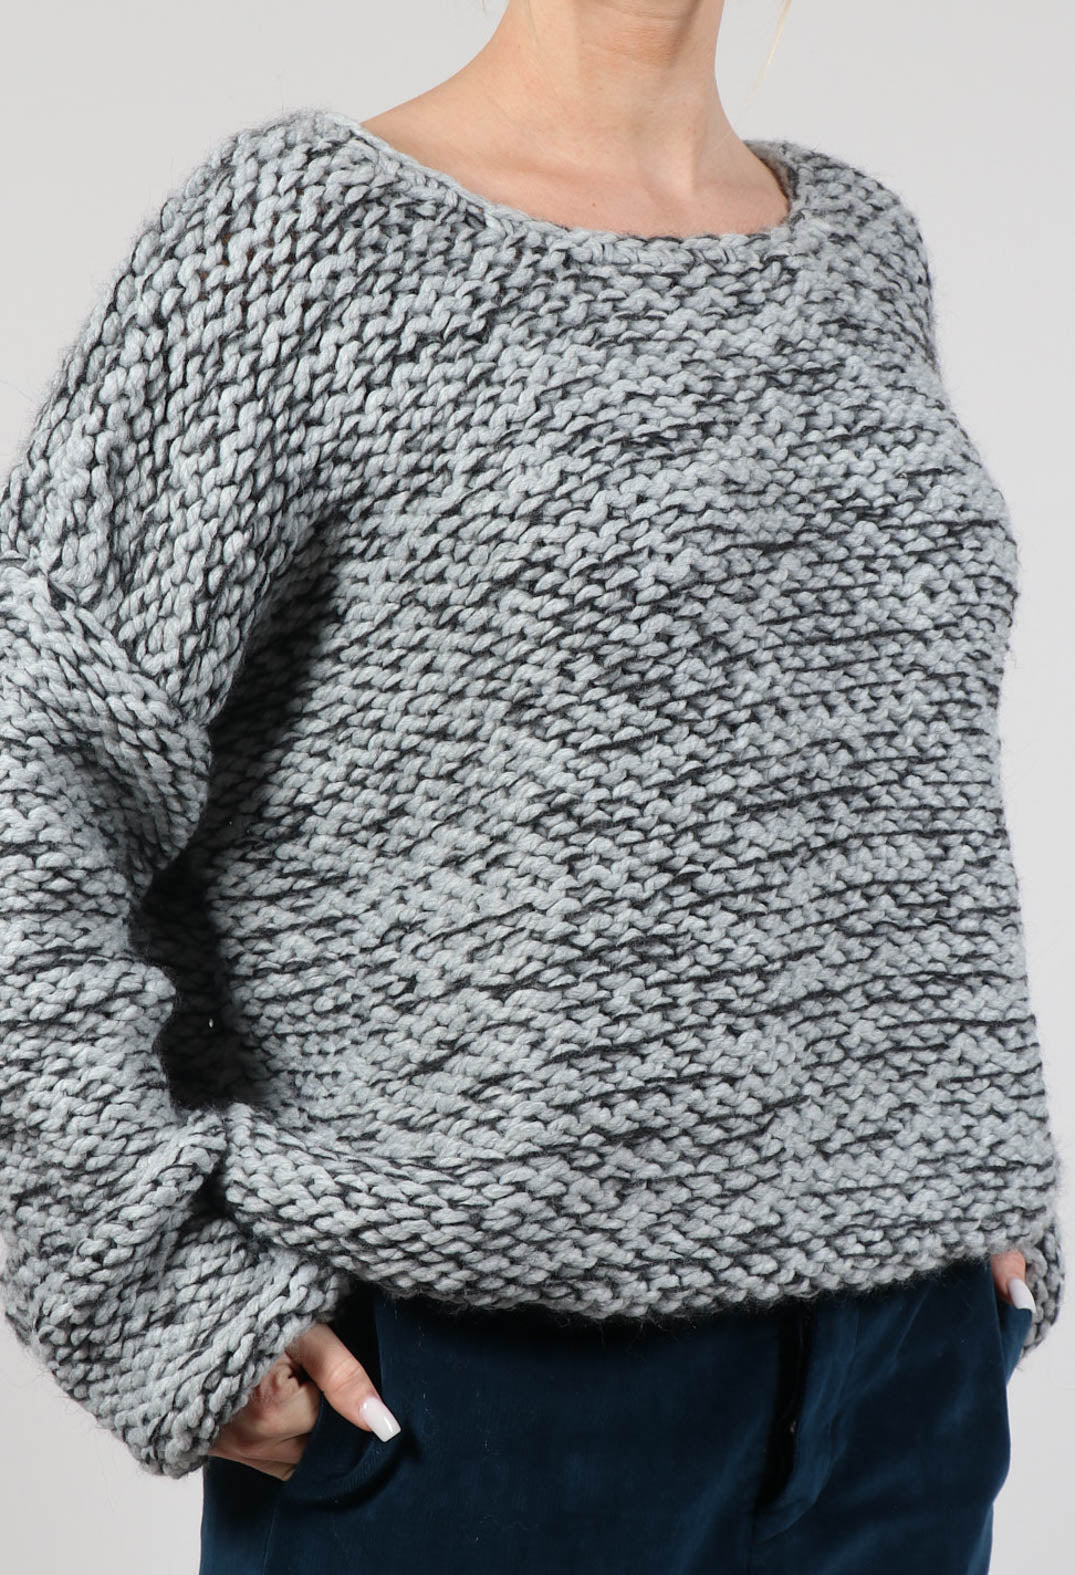 Purl Knit Jumper in Original Grey